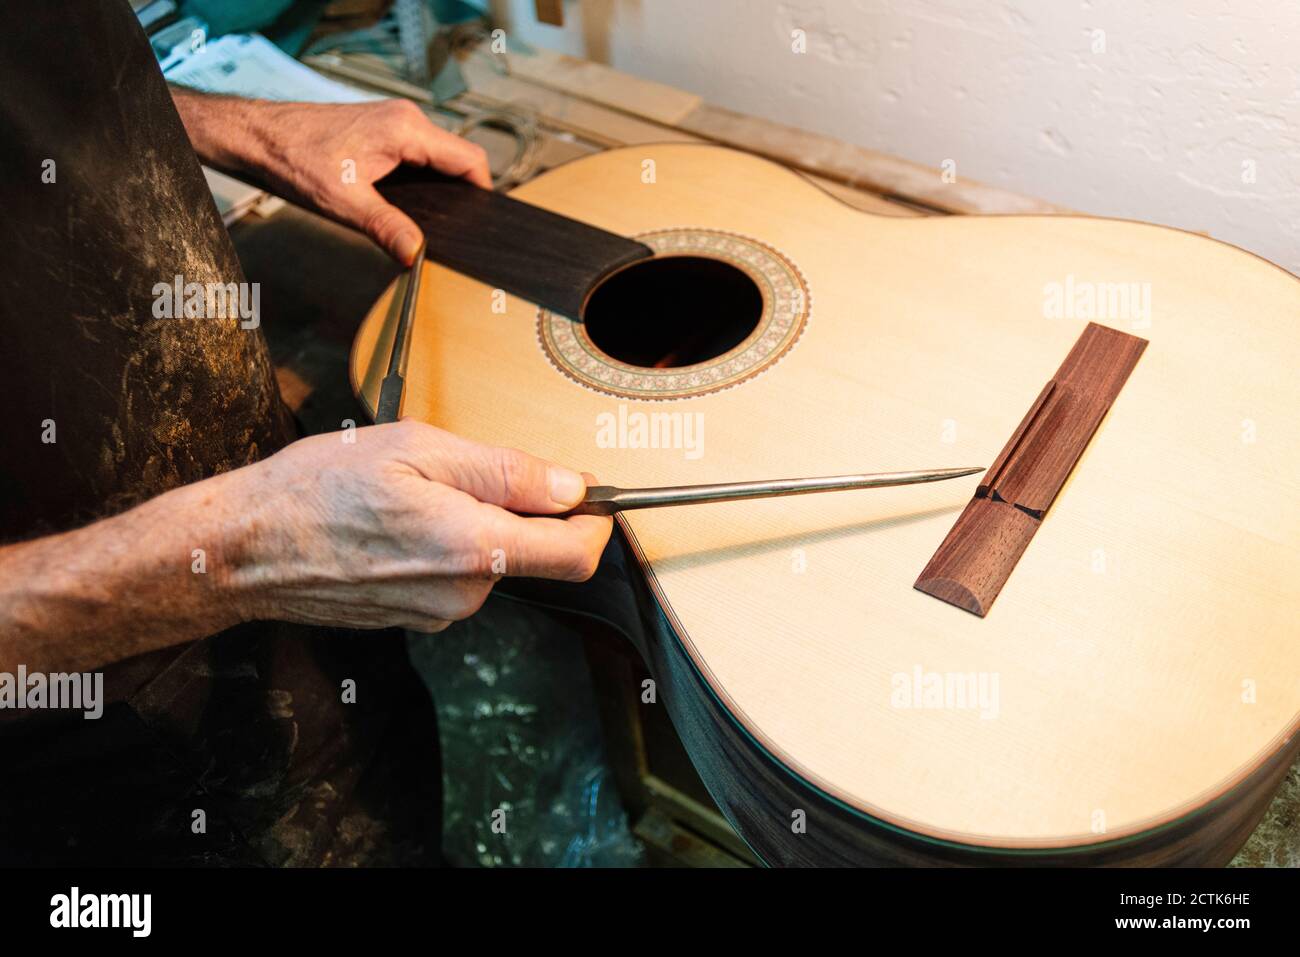 Instrument maker repairing guitar at workshop Stock Photo